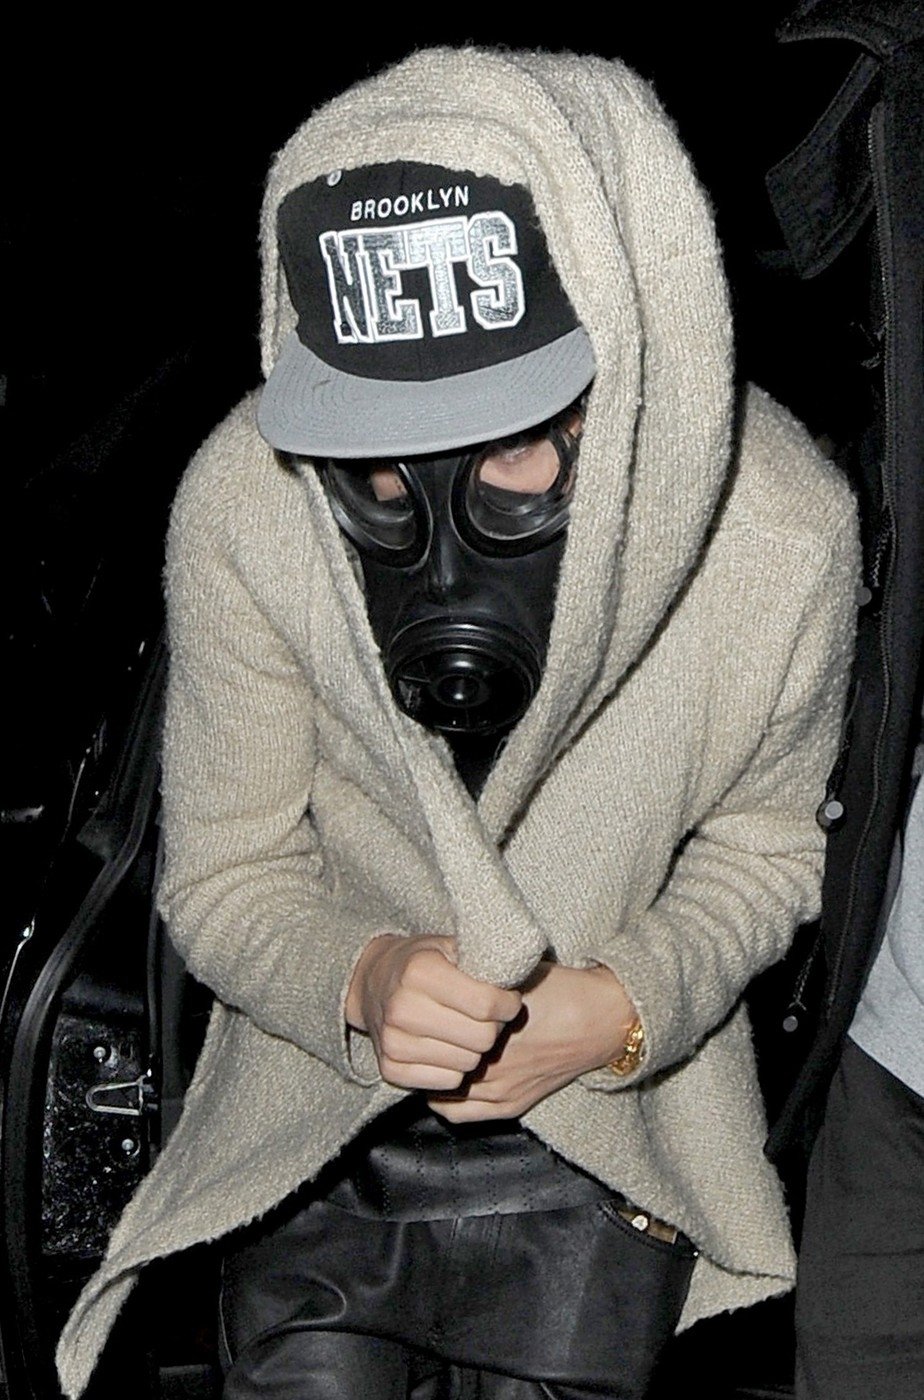 Justin občas nosí plynovou masku